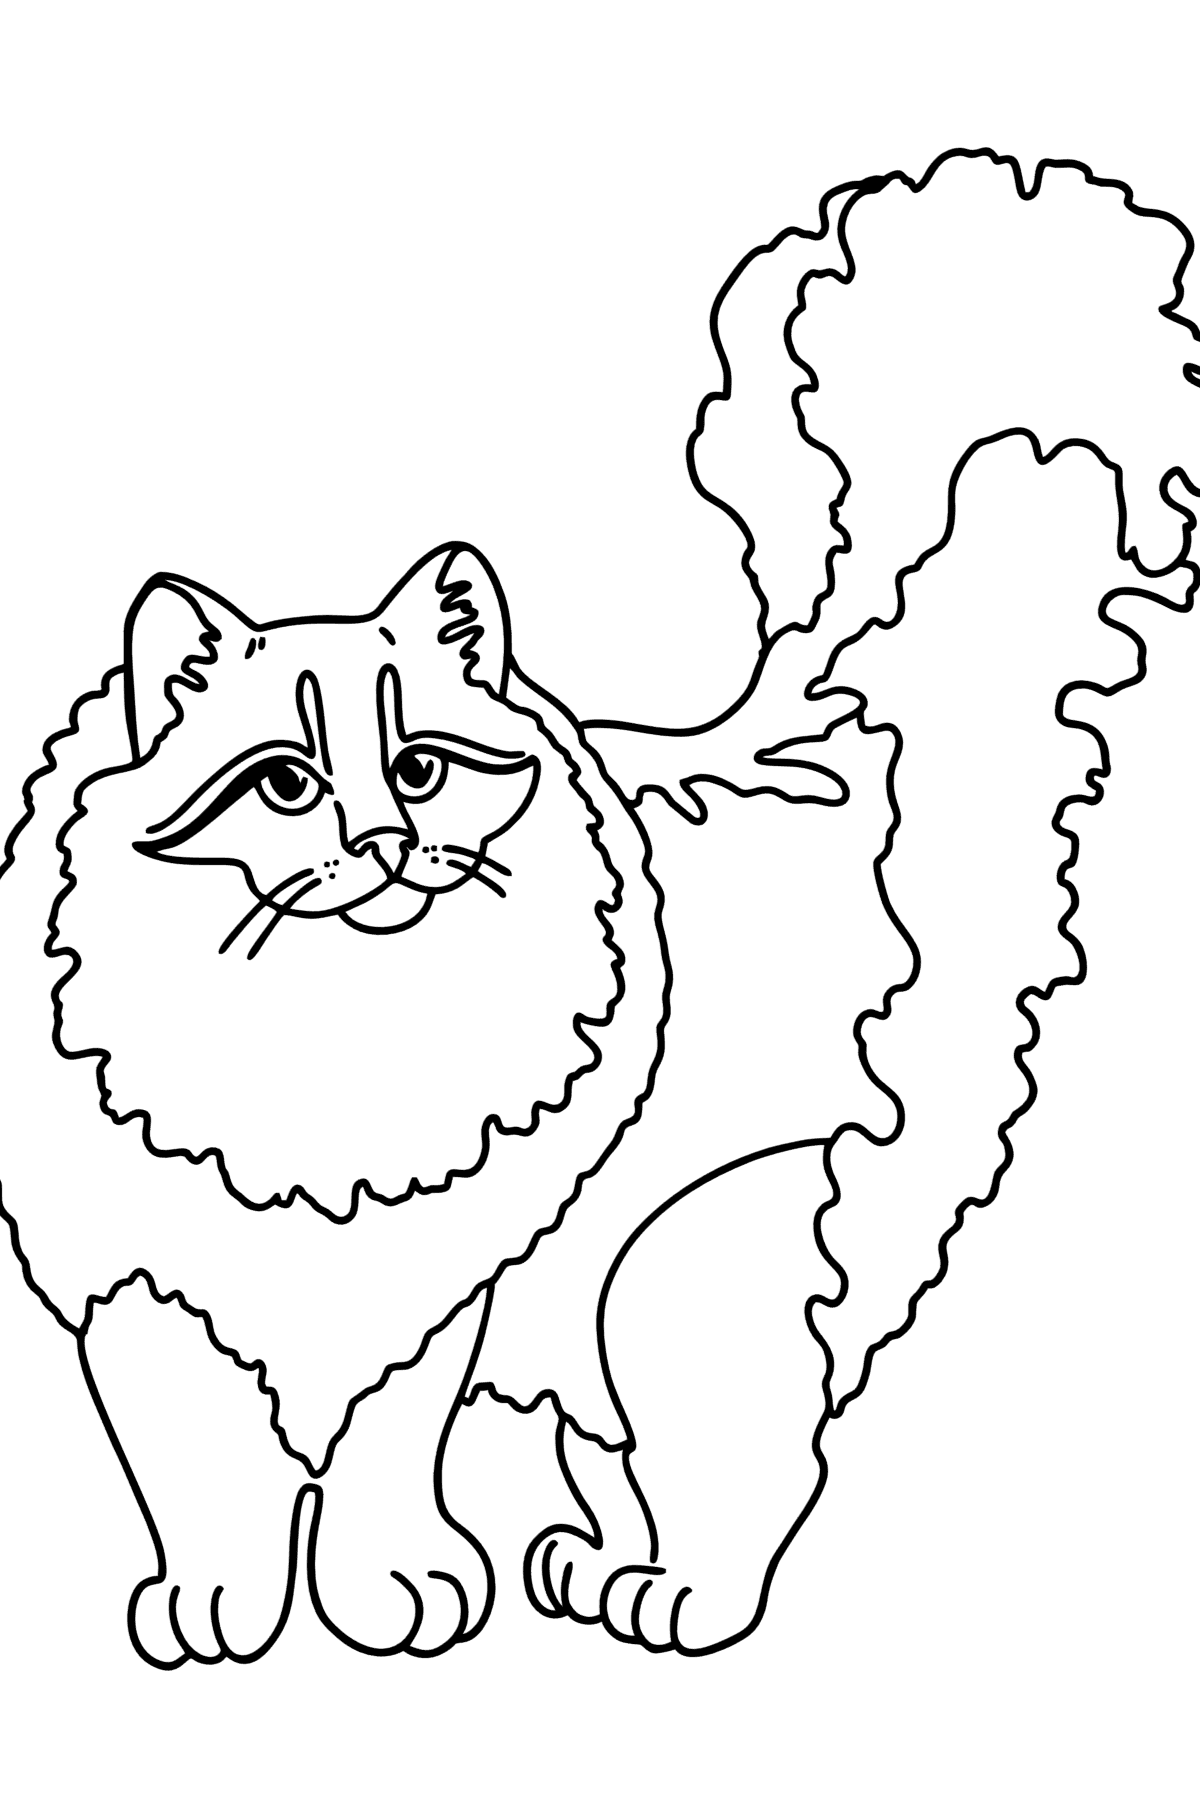 Ausmalbild Sibirische Katze - Malvorlagen für Kinder